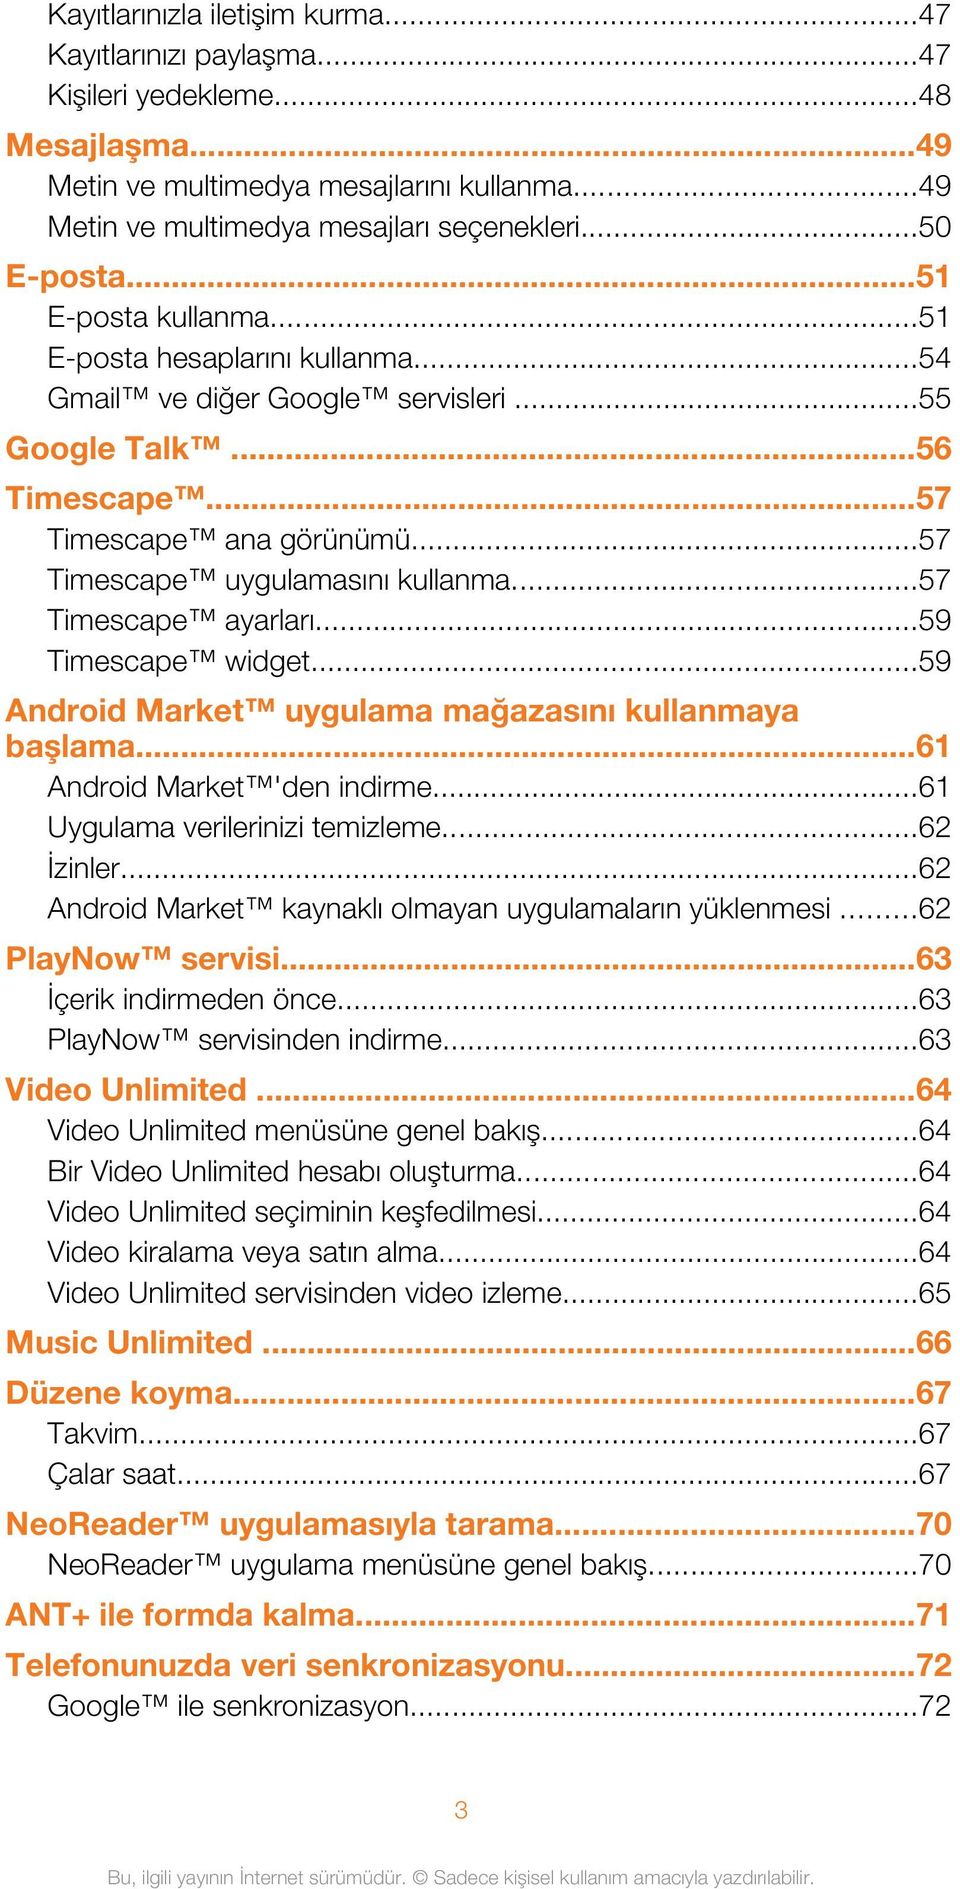 ..57 Timescape uygulamasını kullanma...57 Timescape ayarları...59 Timescape widget...59 Android Market uygulama mağazasını kullanmaya başlama...61 Android Market 'den indirme.